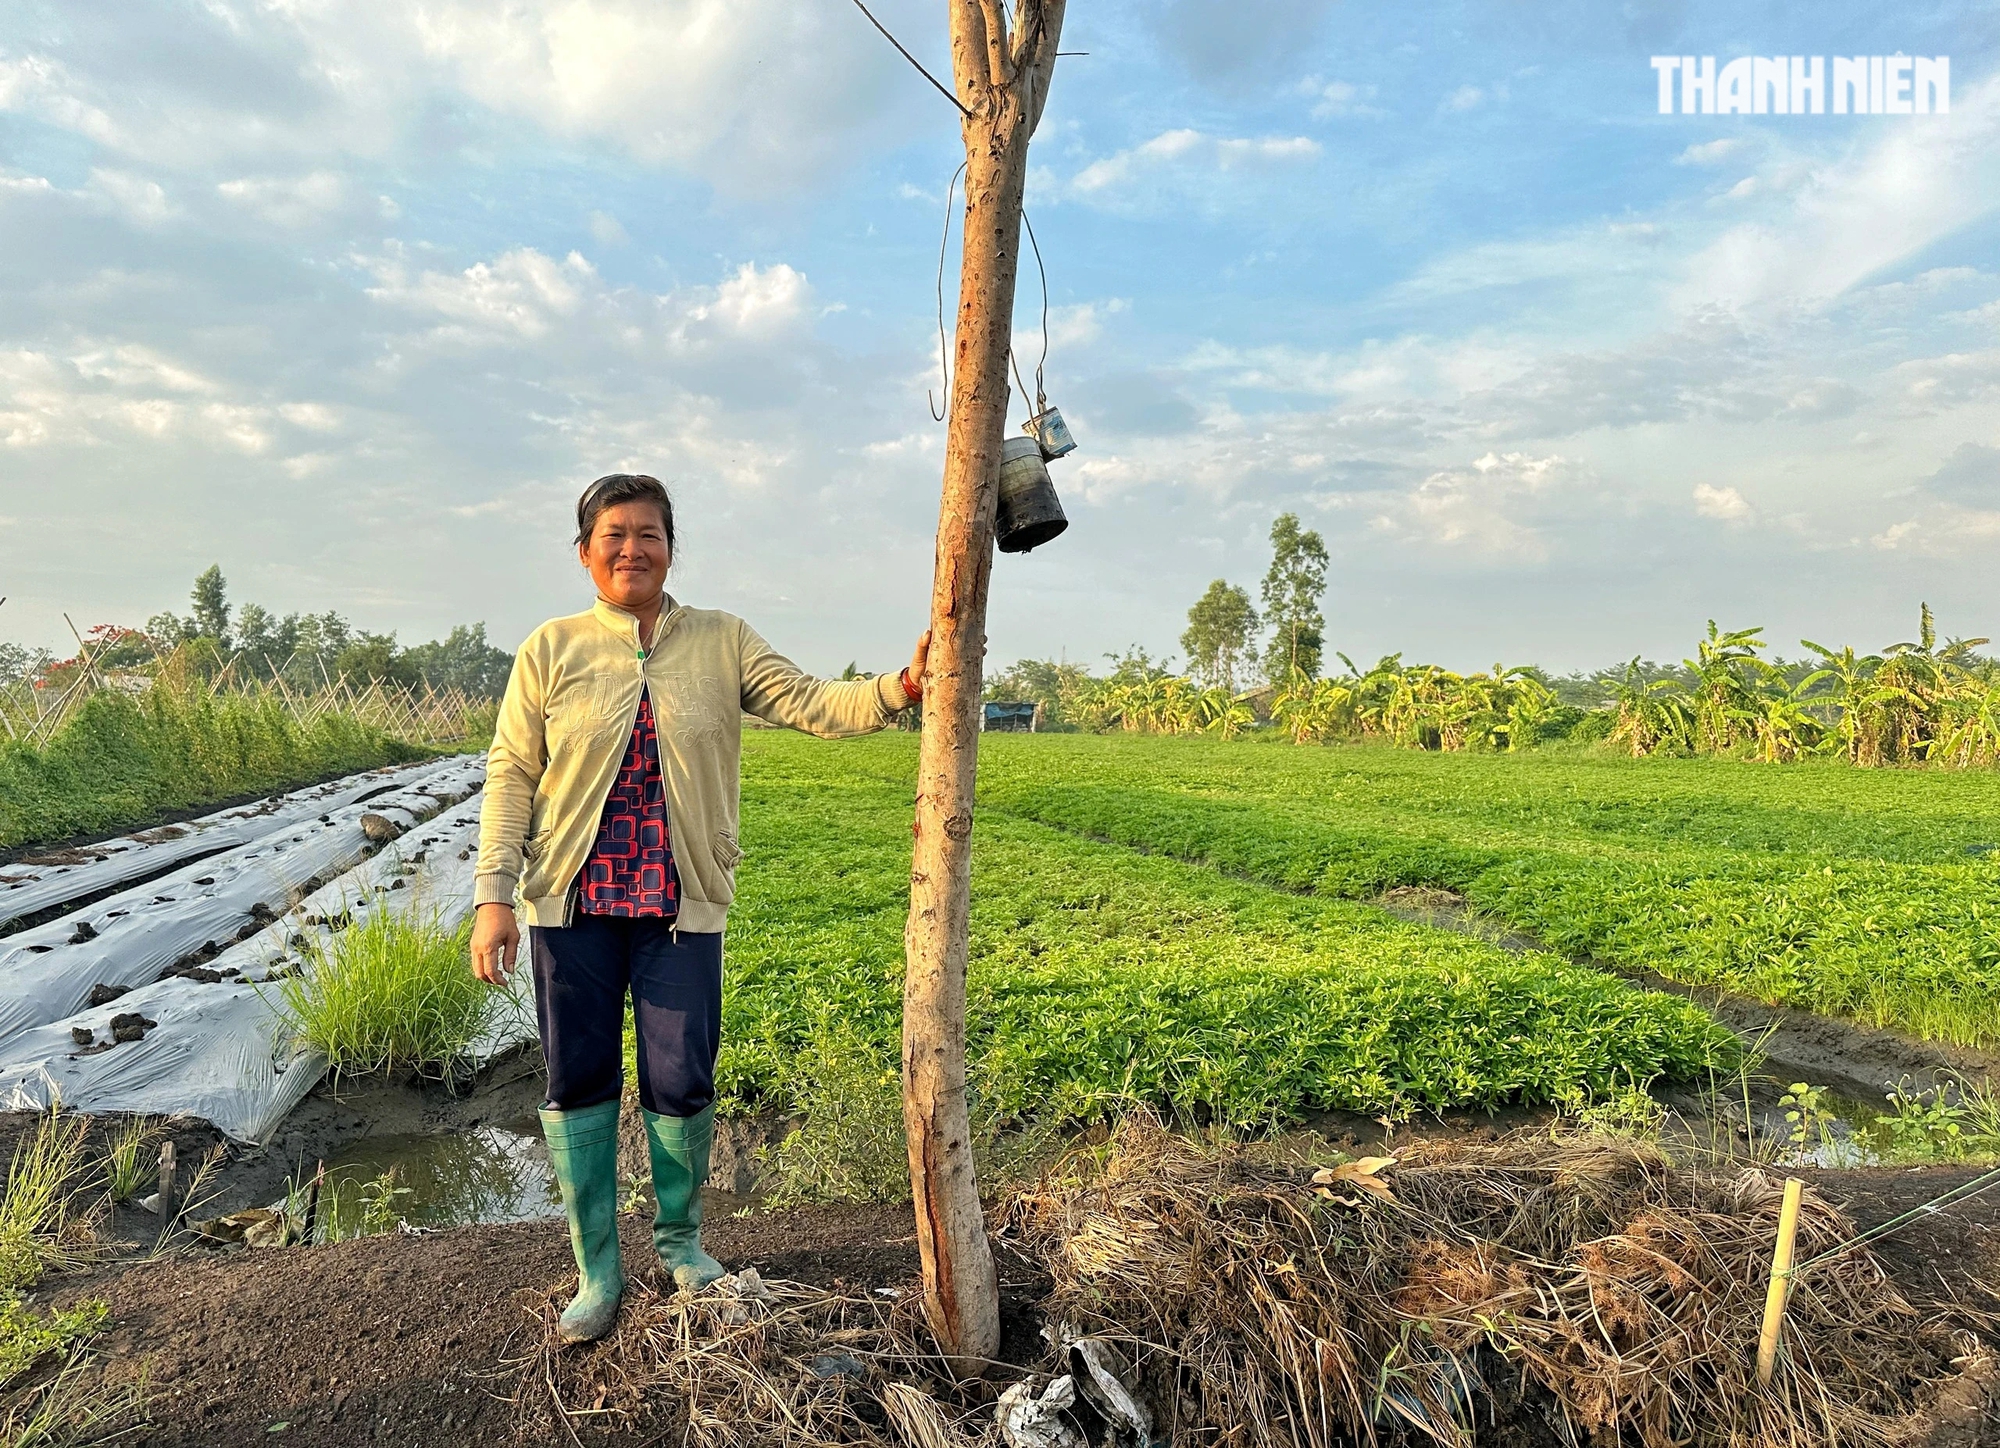 Bà Hương (49 tuổi), là chủ nhân của cây phượng cho biết bà trồng nó sau 1 năm chuyển về đây sống. 